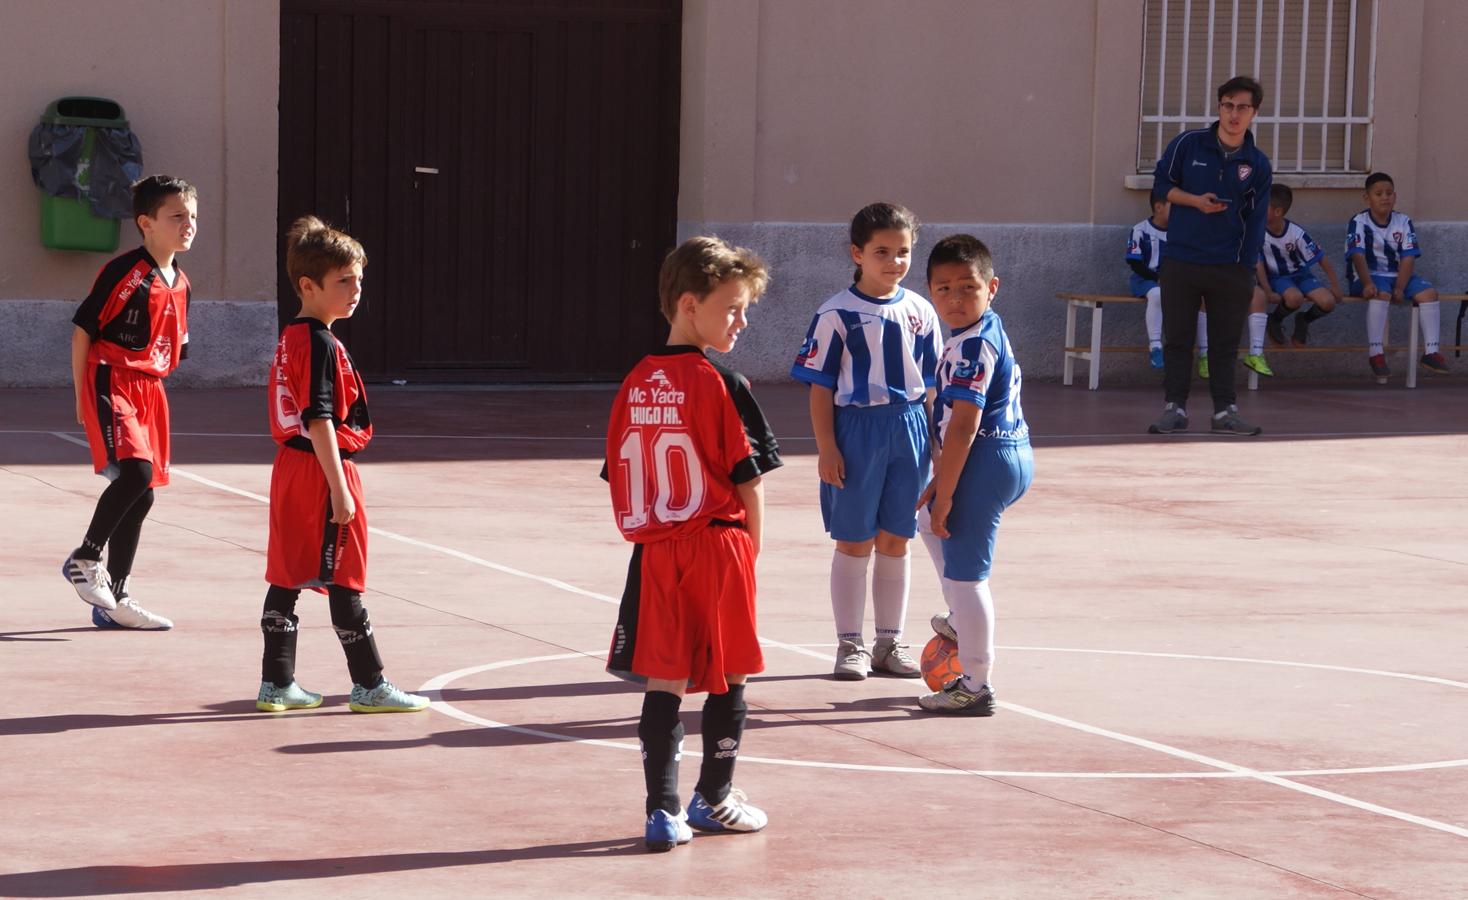 Las mejores imágenes del encuentro de futsal entre Ciudad de los muchachos y Sta. Fca. Javier Cabrini B